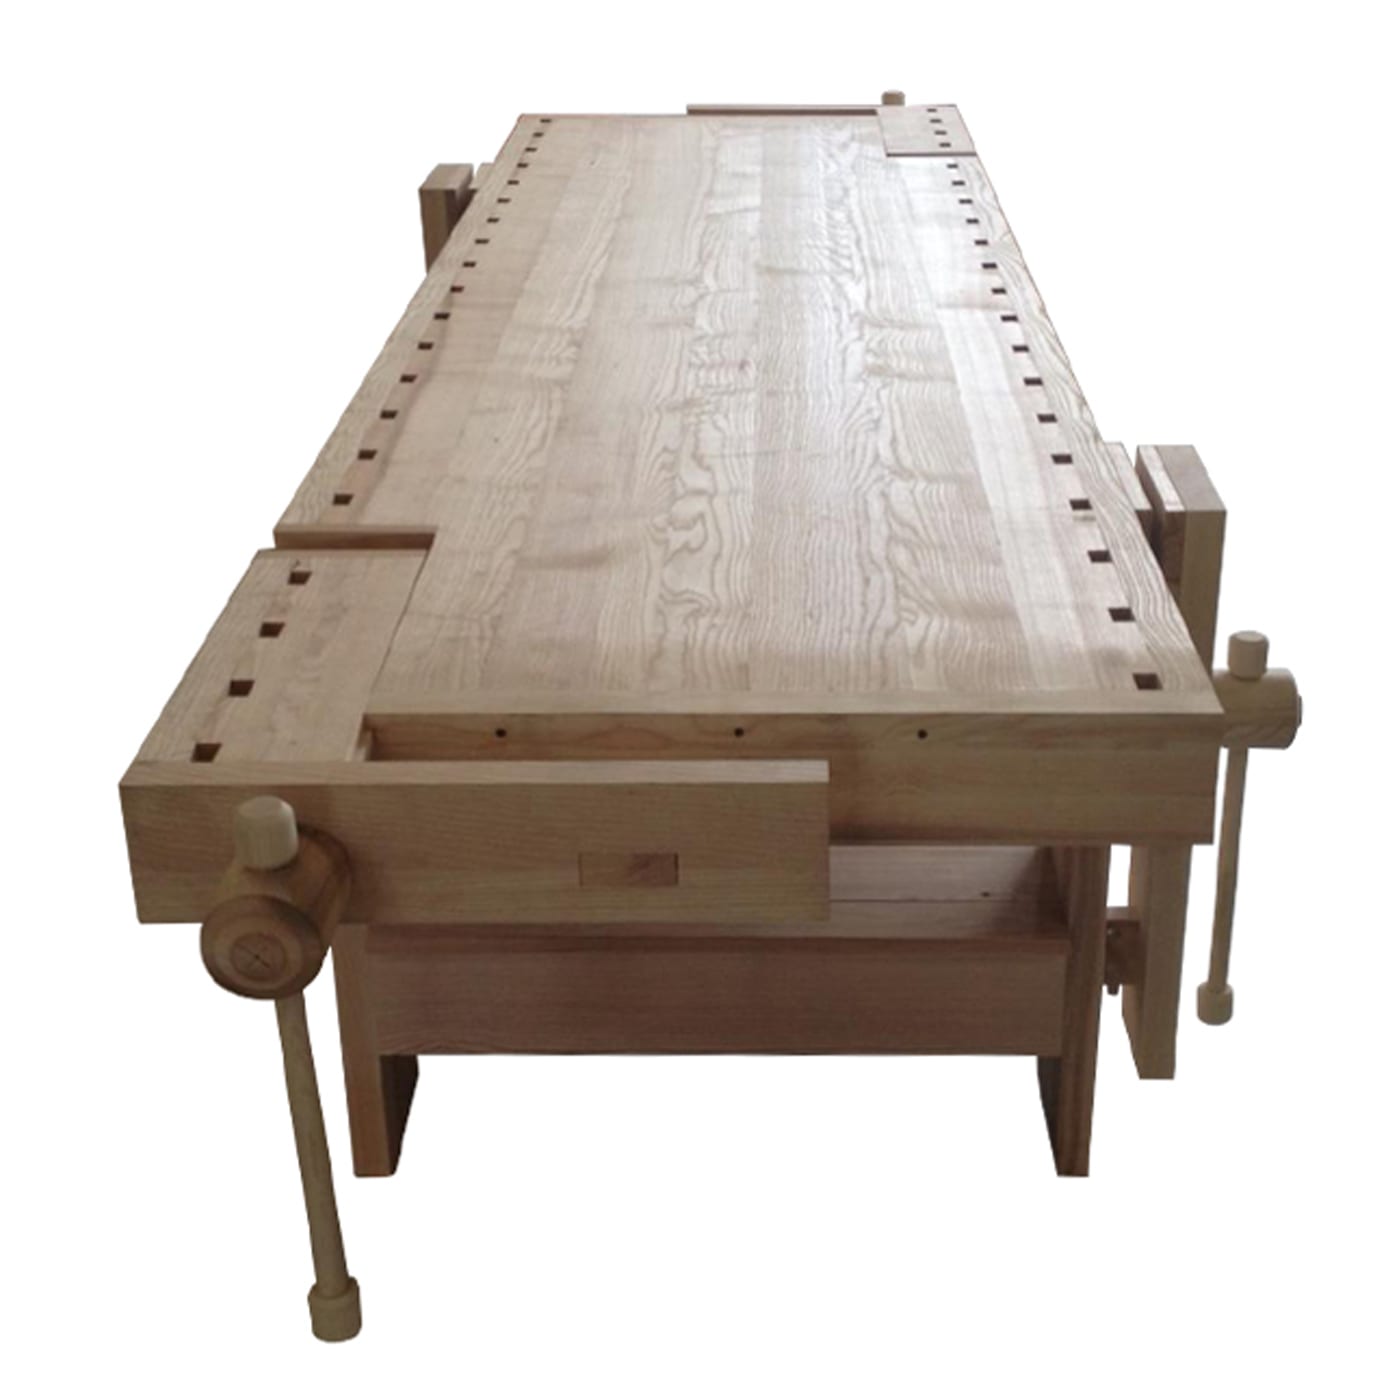 Oroval Carpenter Table - Oltrelegno